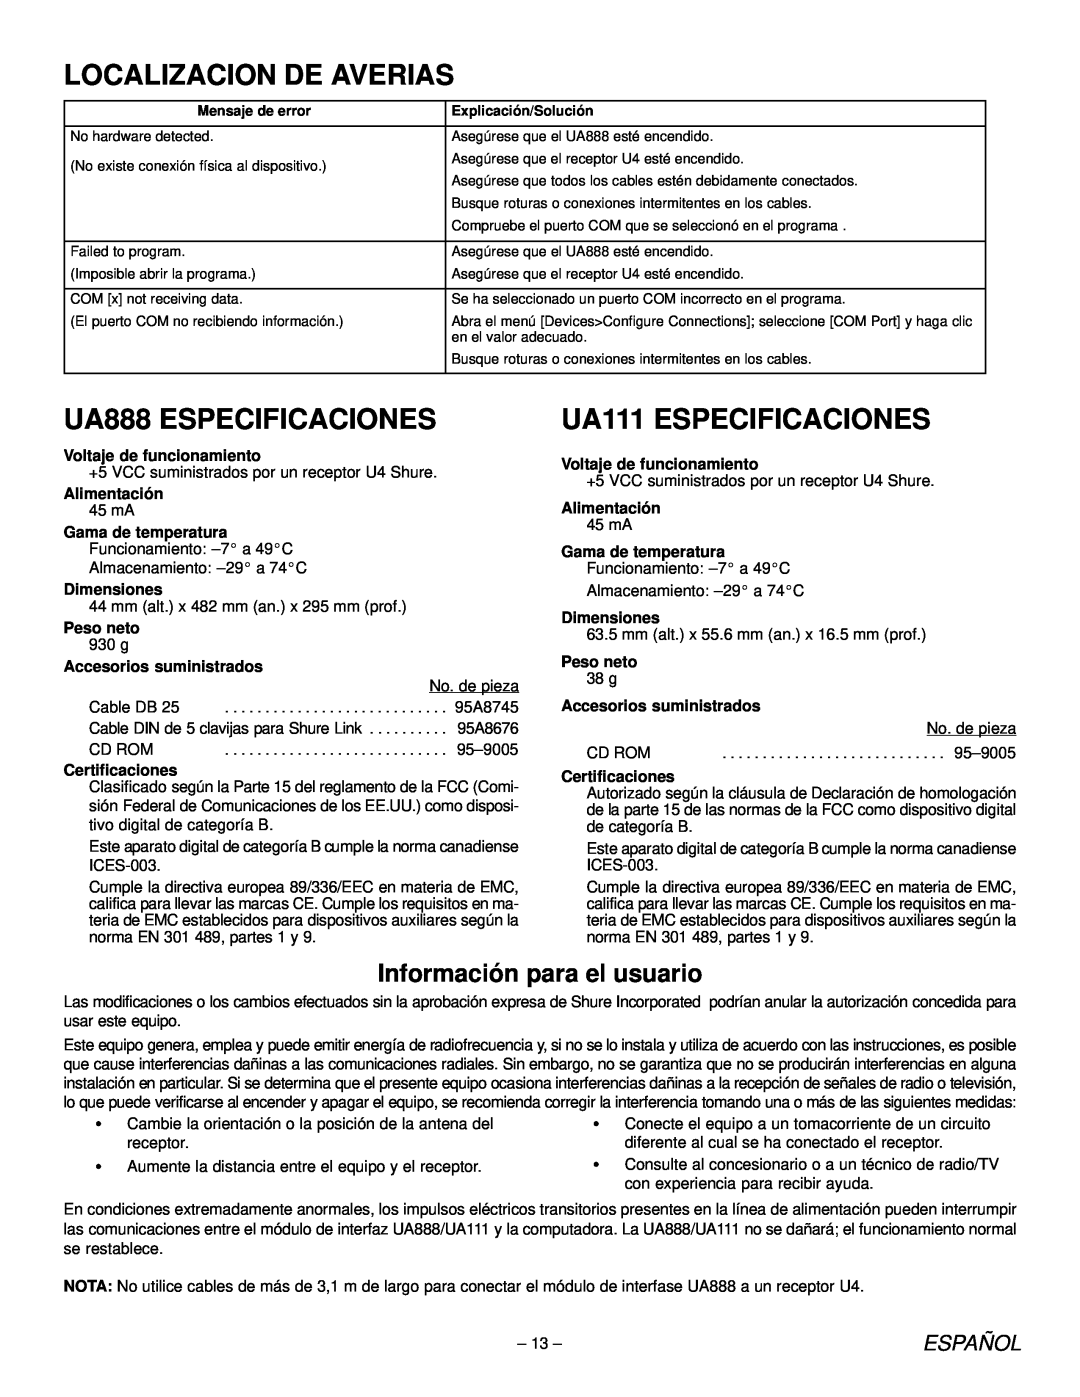 Shure Localizacion De Averias, UA888 ESPECIFICACIONES, UA111 ESPECIFICACIONES, Información para el usuario, Español 